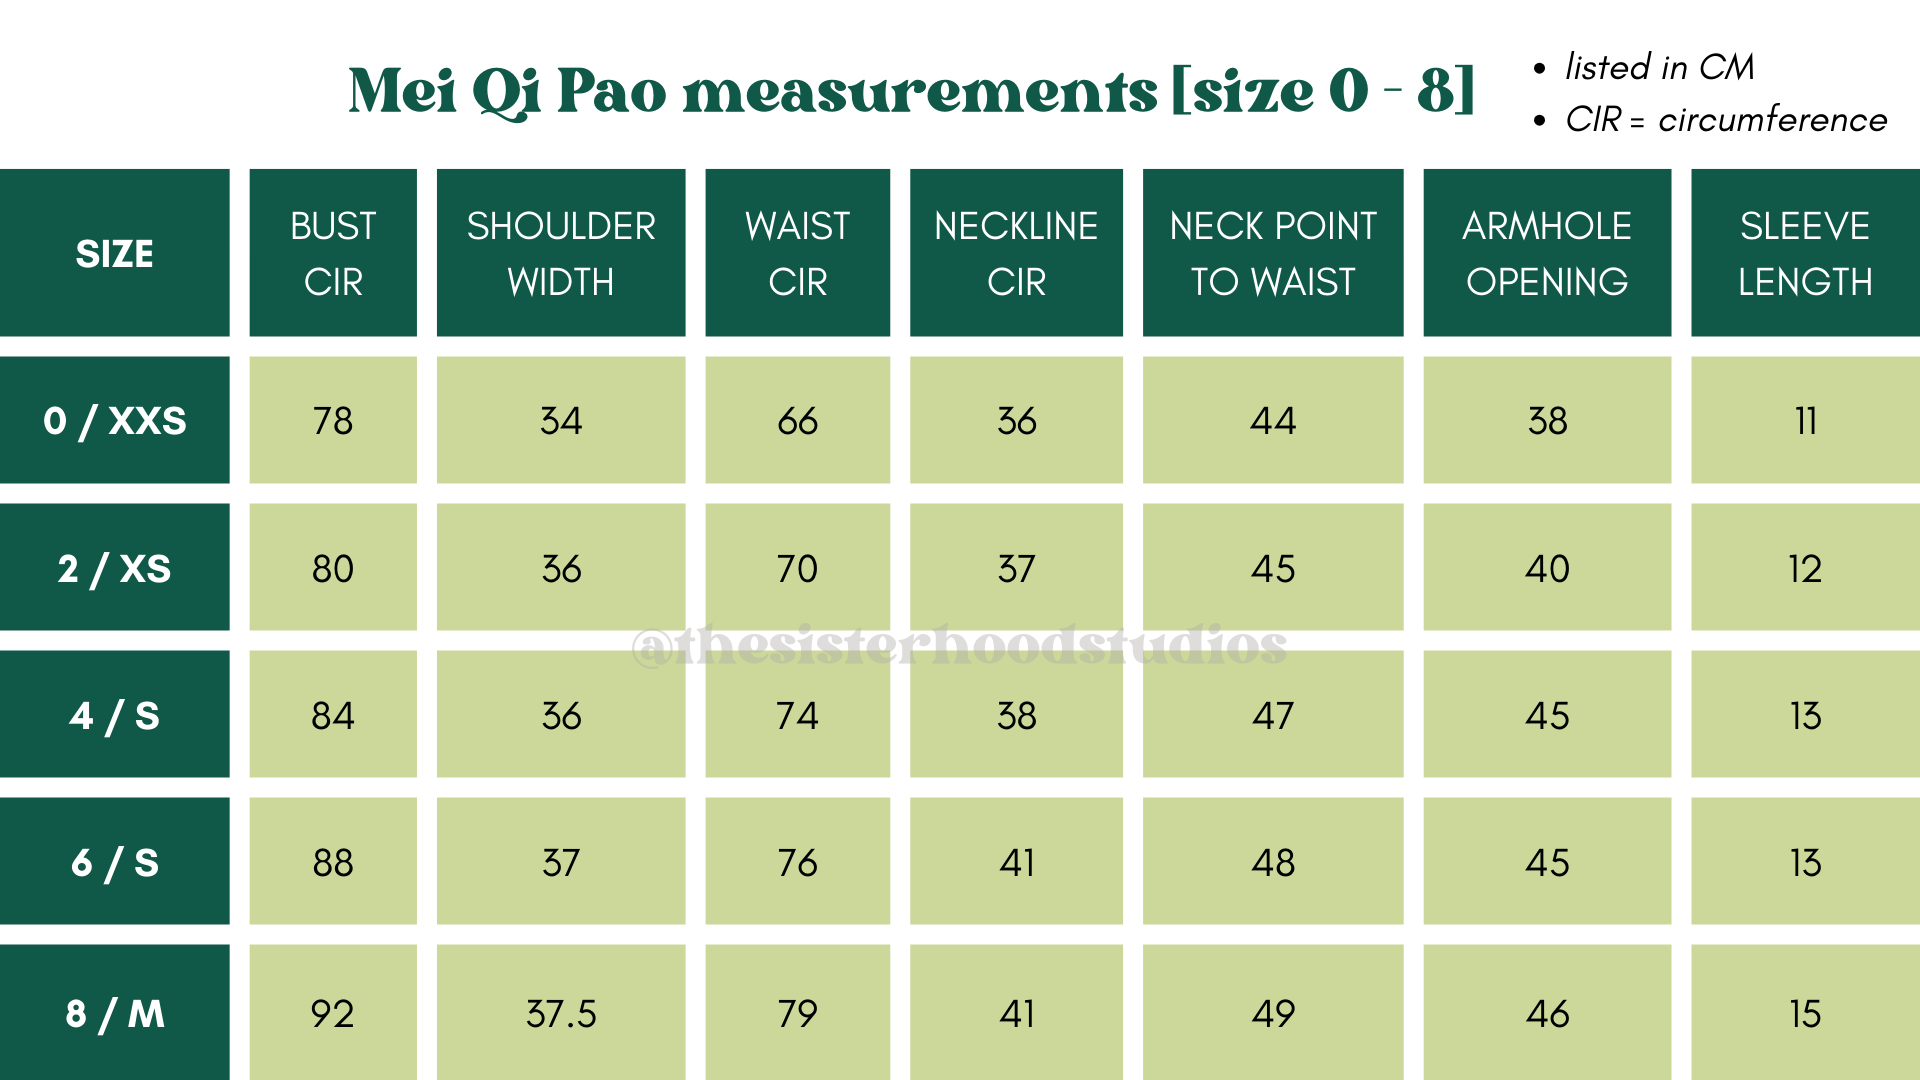 MQP measurements [SIZE 0-8]